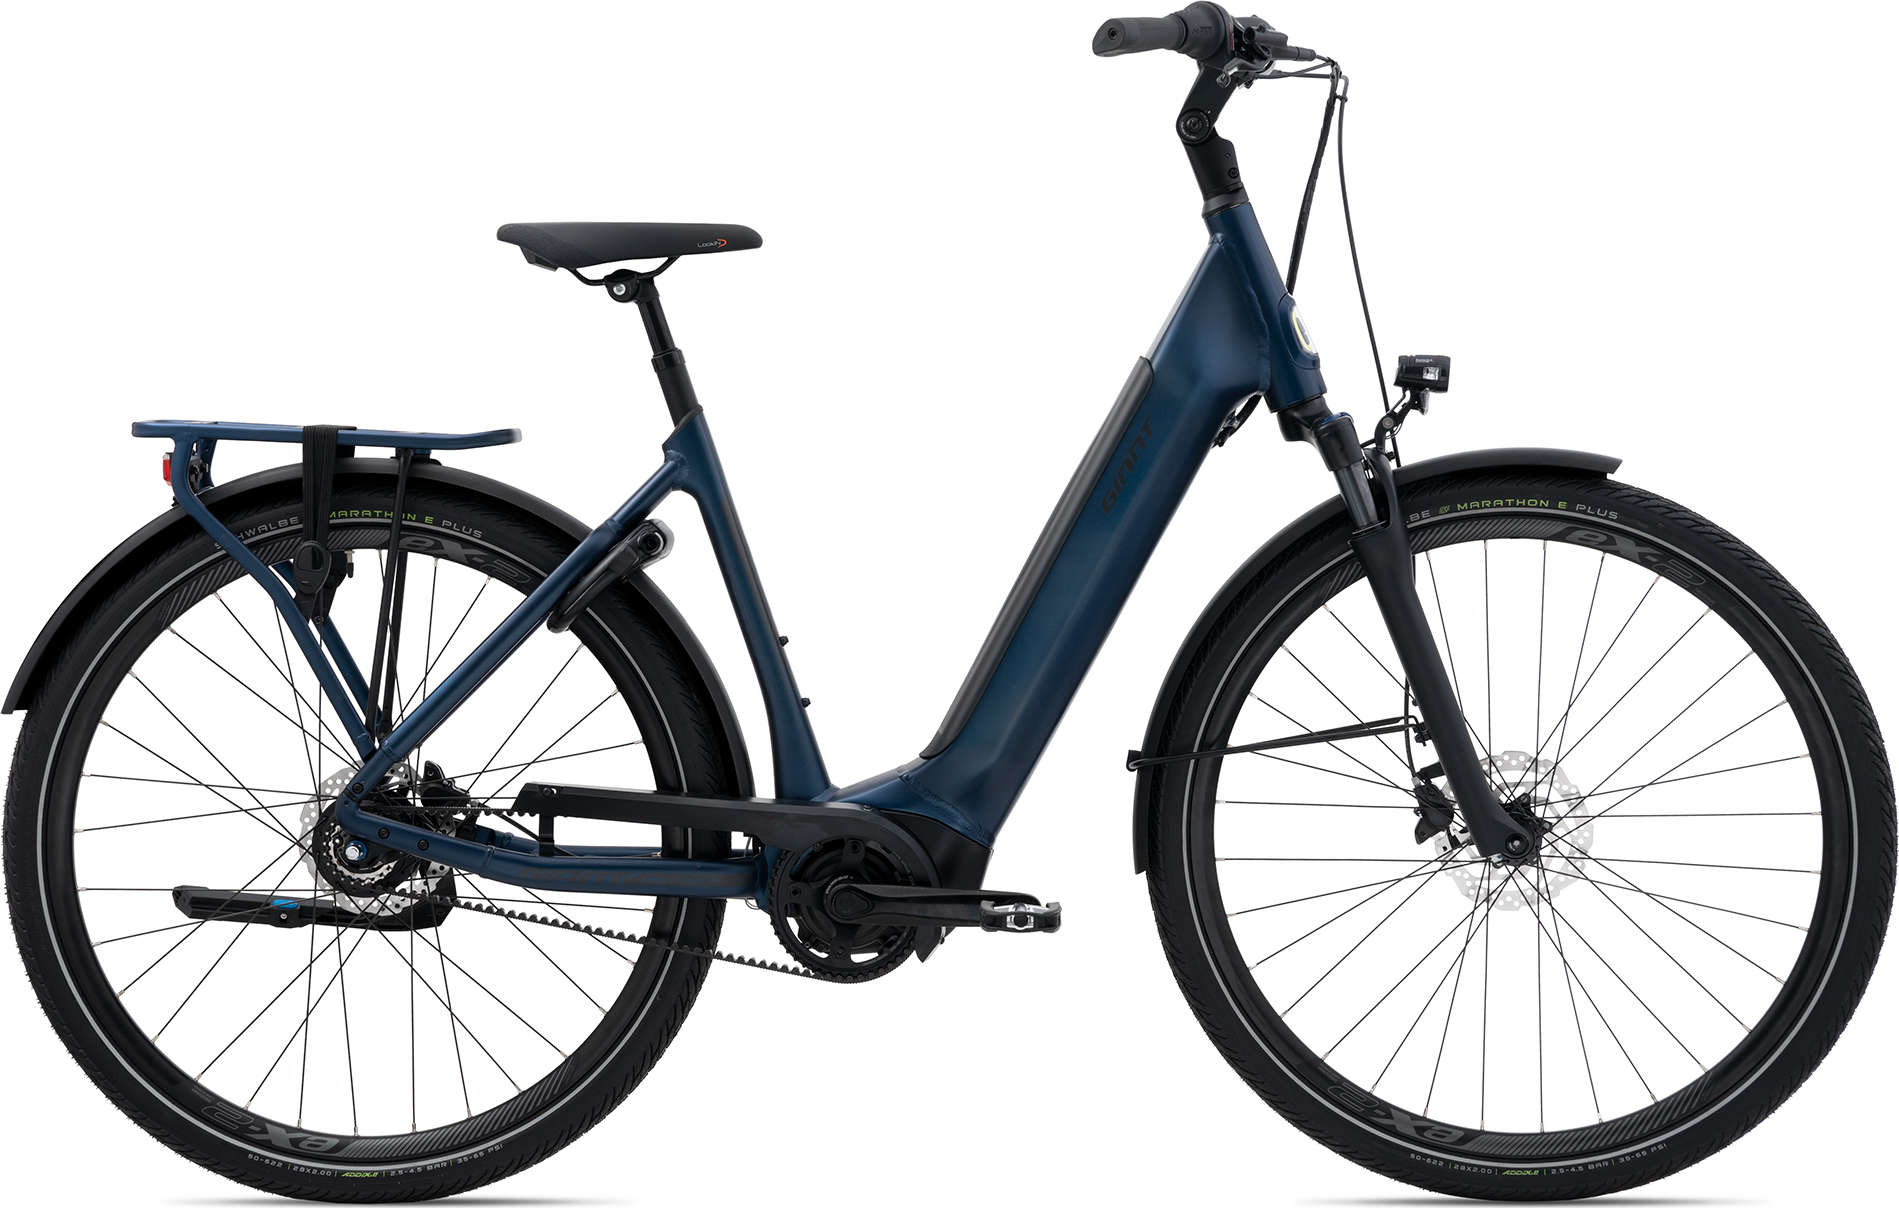 Verplicht Actuator lancering Aanbiedingen - Elektrische fietsen outlet| Berry Bikes Valkenswaard